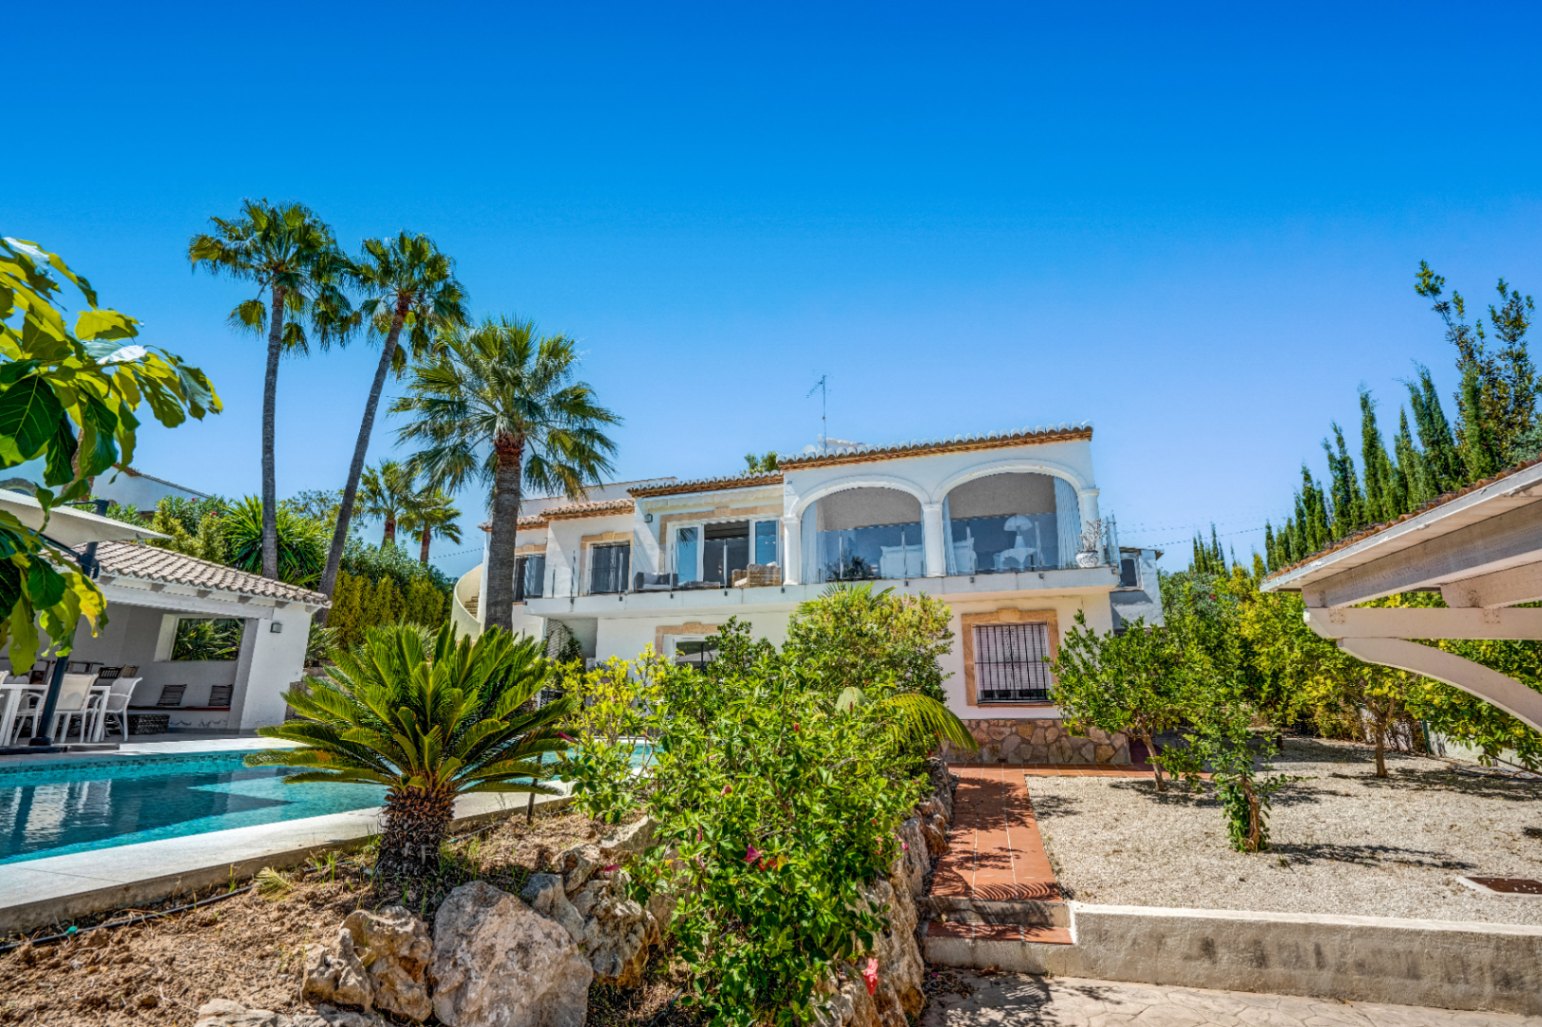 Villa à vendre avec vue sur la mer dans l’urbanisation renommée Pinosol de Javea.